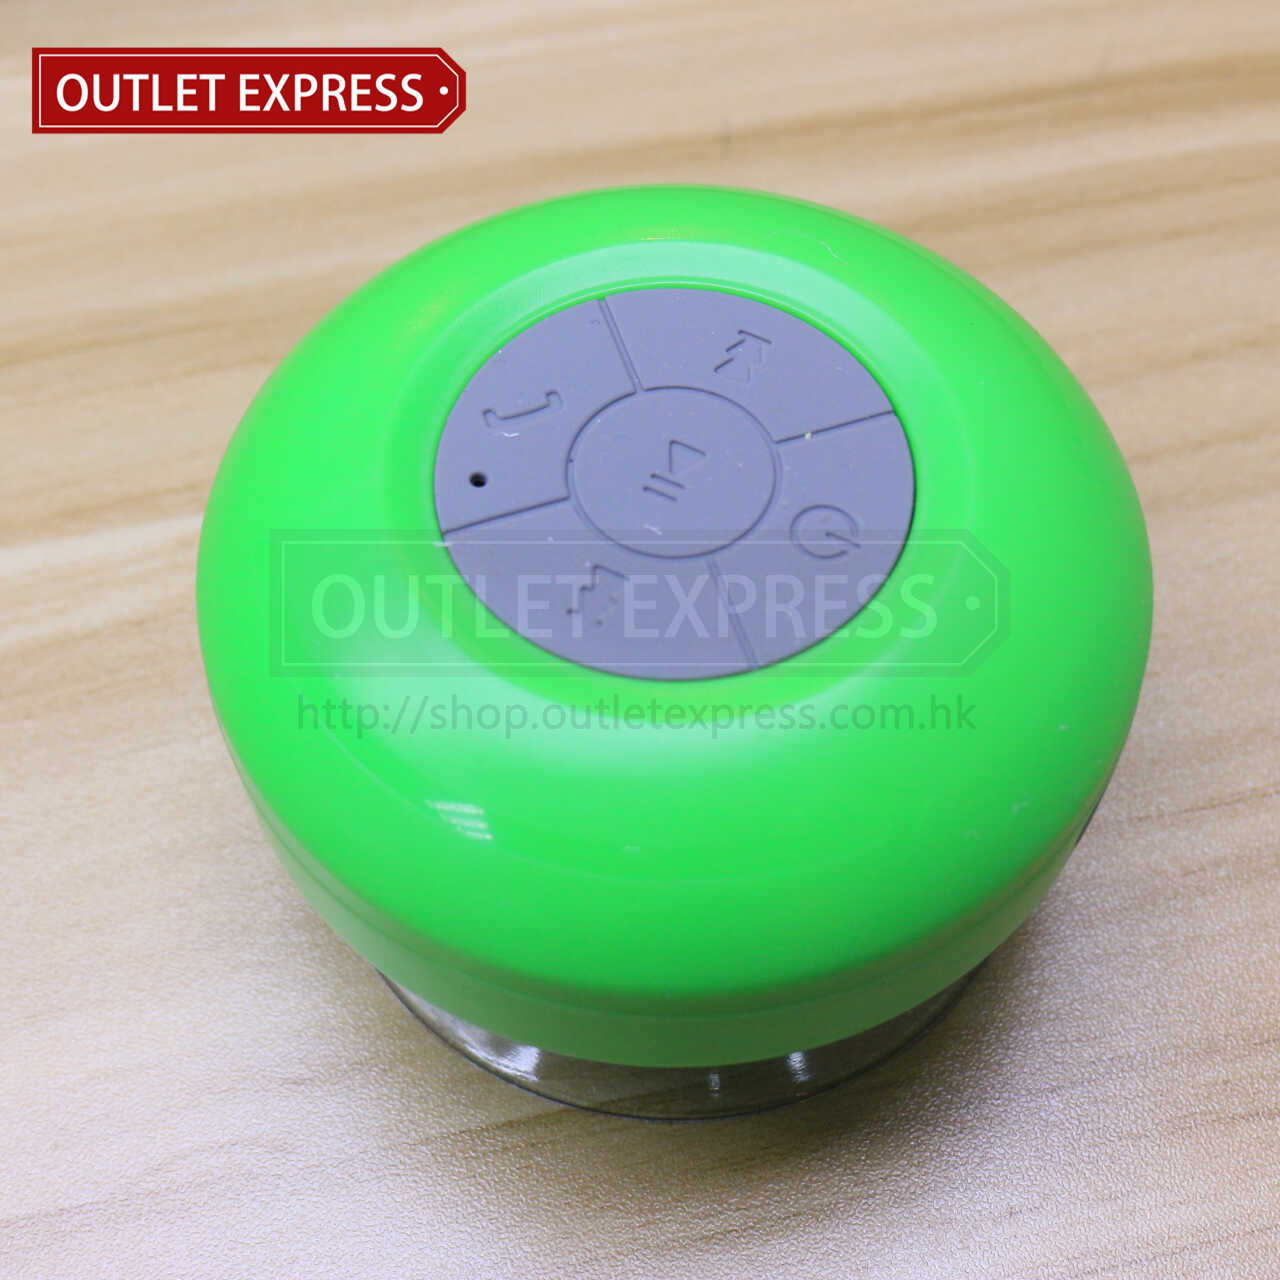 吸盤式防水藍牙喇叭 | 浴室專用 綠色款- Outlet Express HK 生活百貨城實拍圖